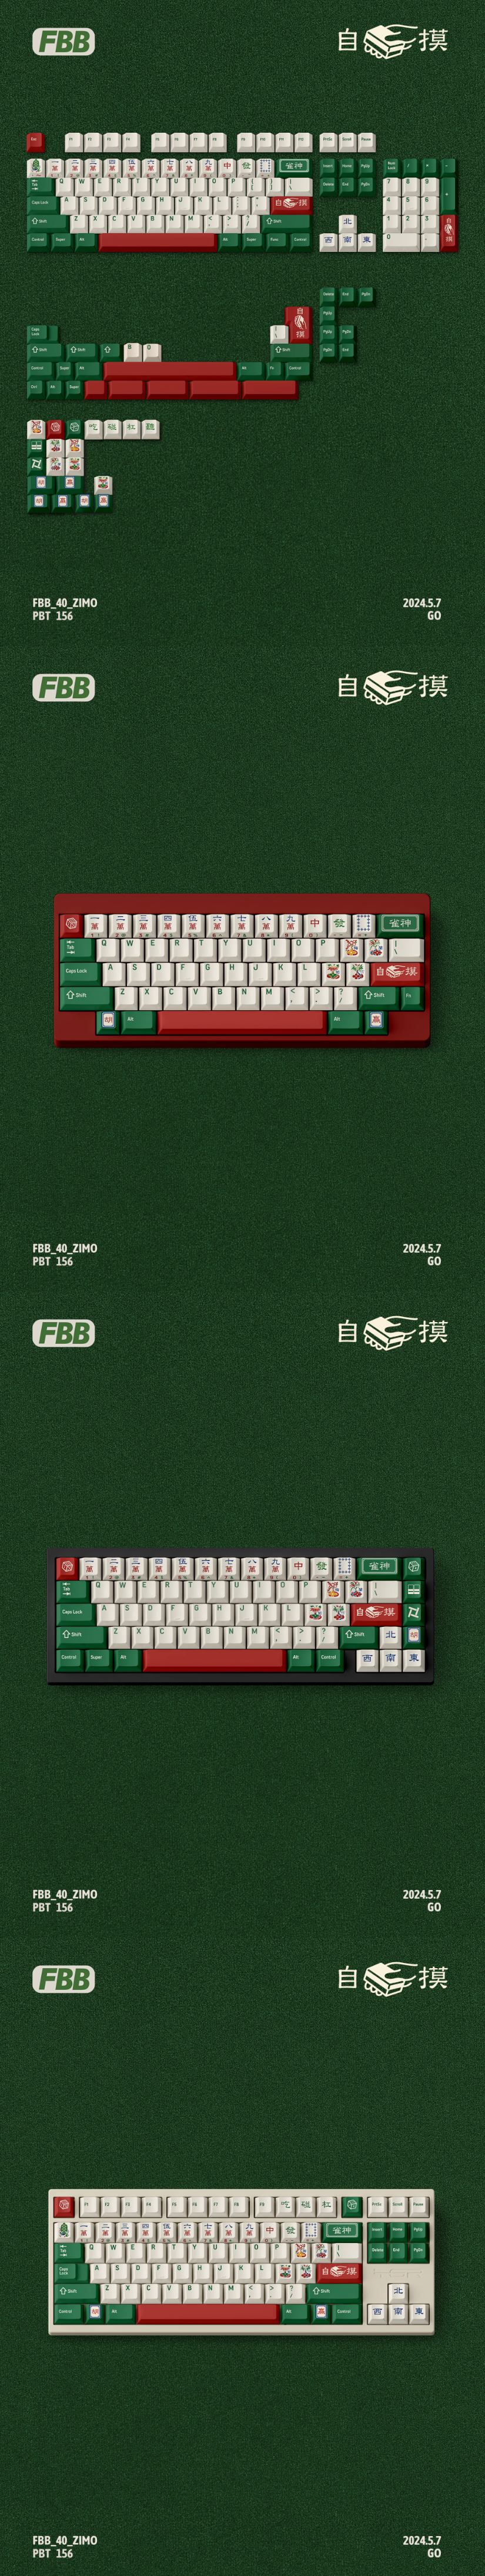 FBB Mahjong